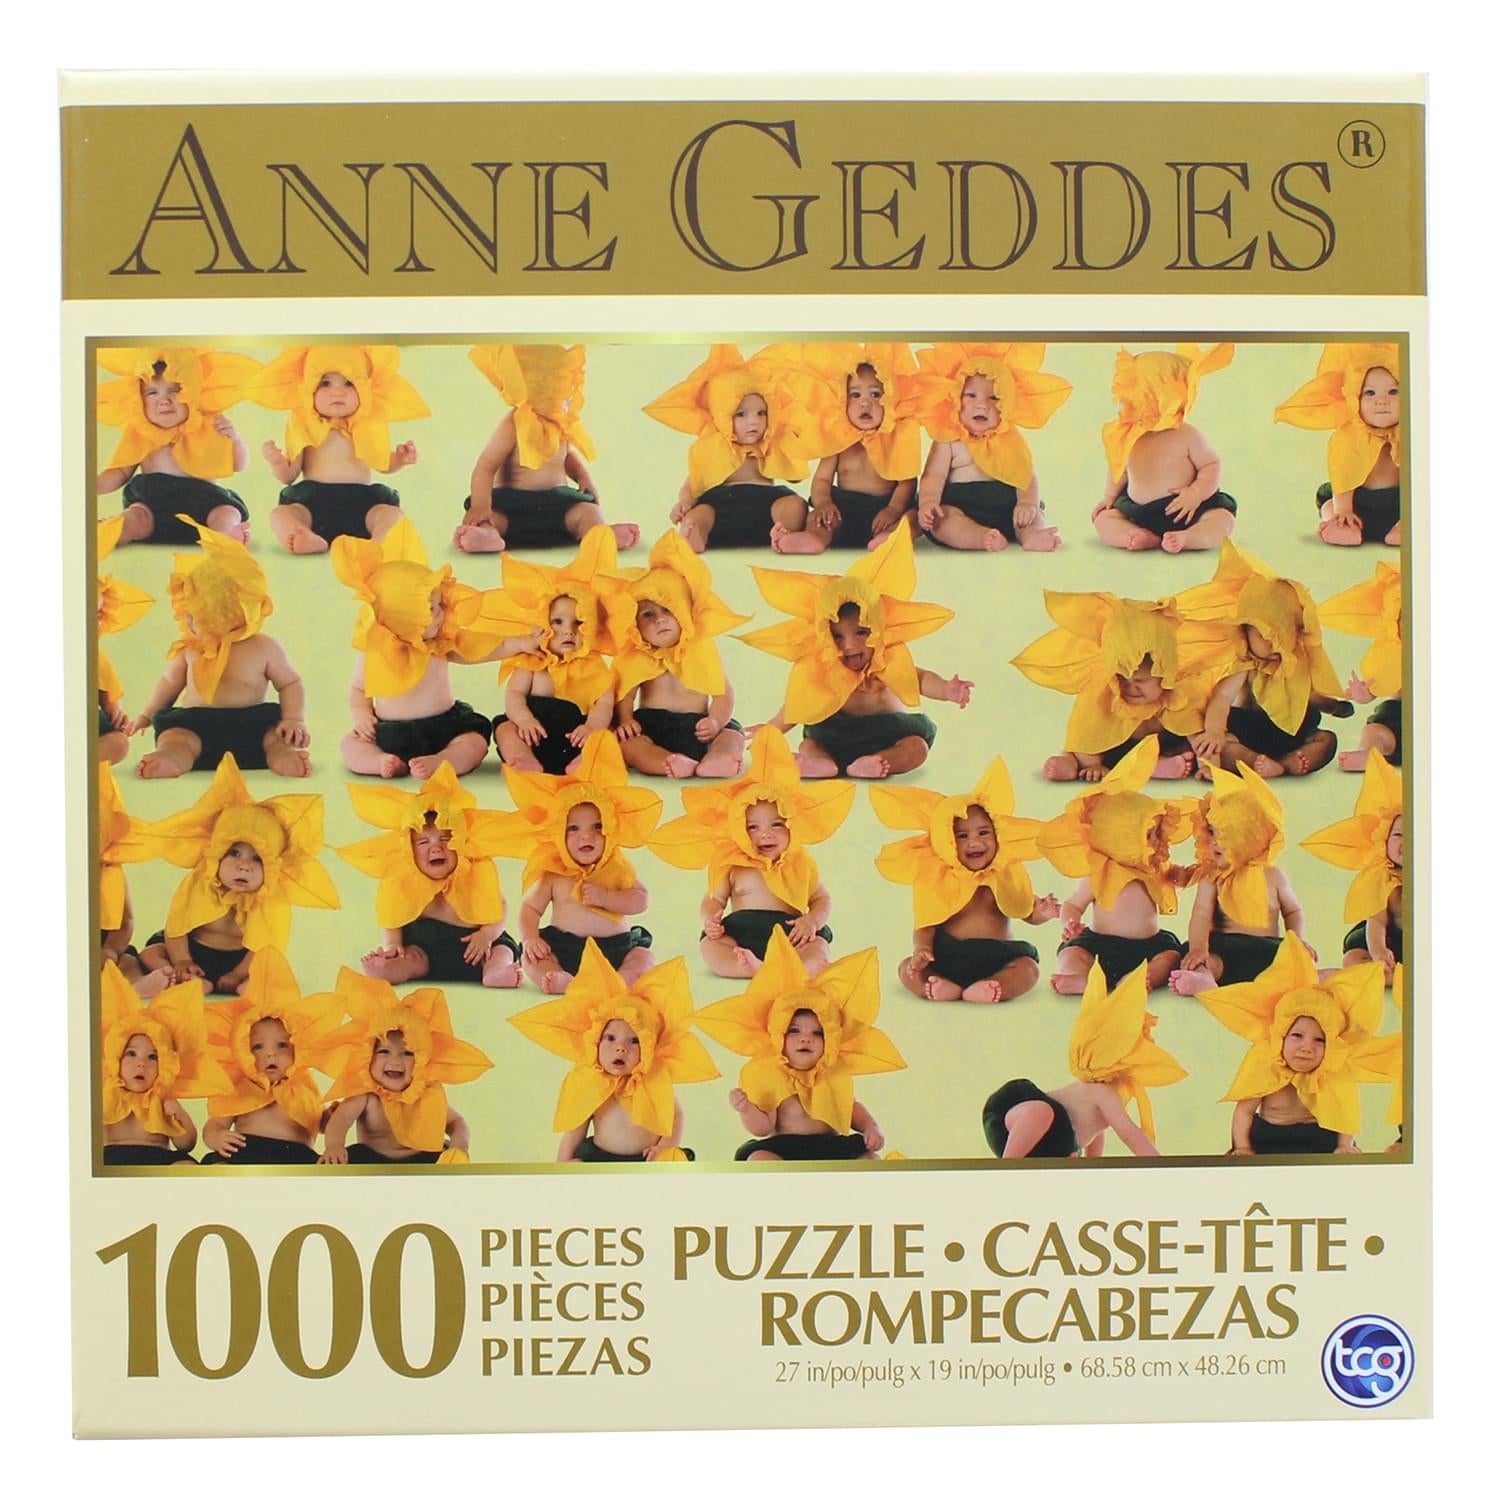 Anne Gedes Sunflower 1000 Piece Jigsaw Puzzle